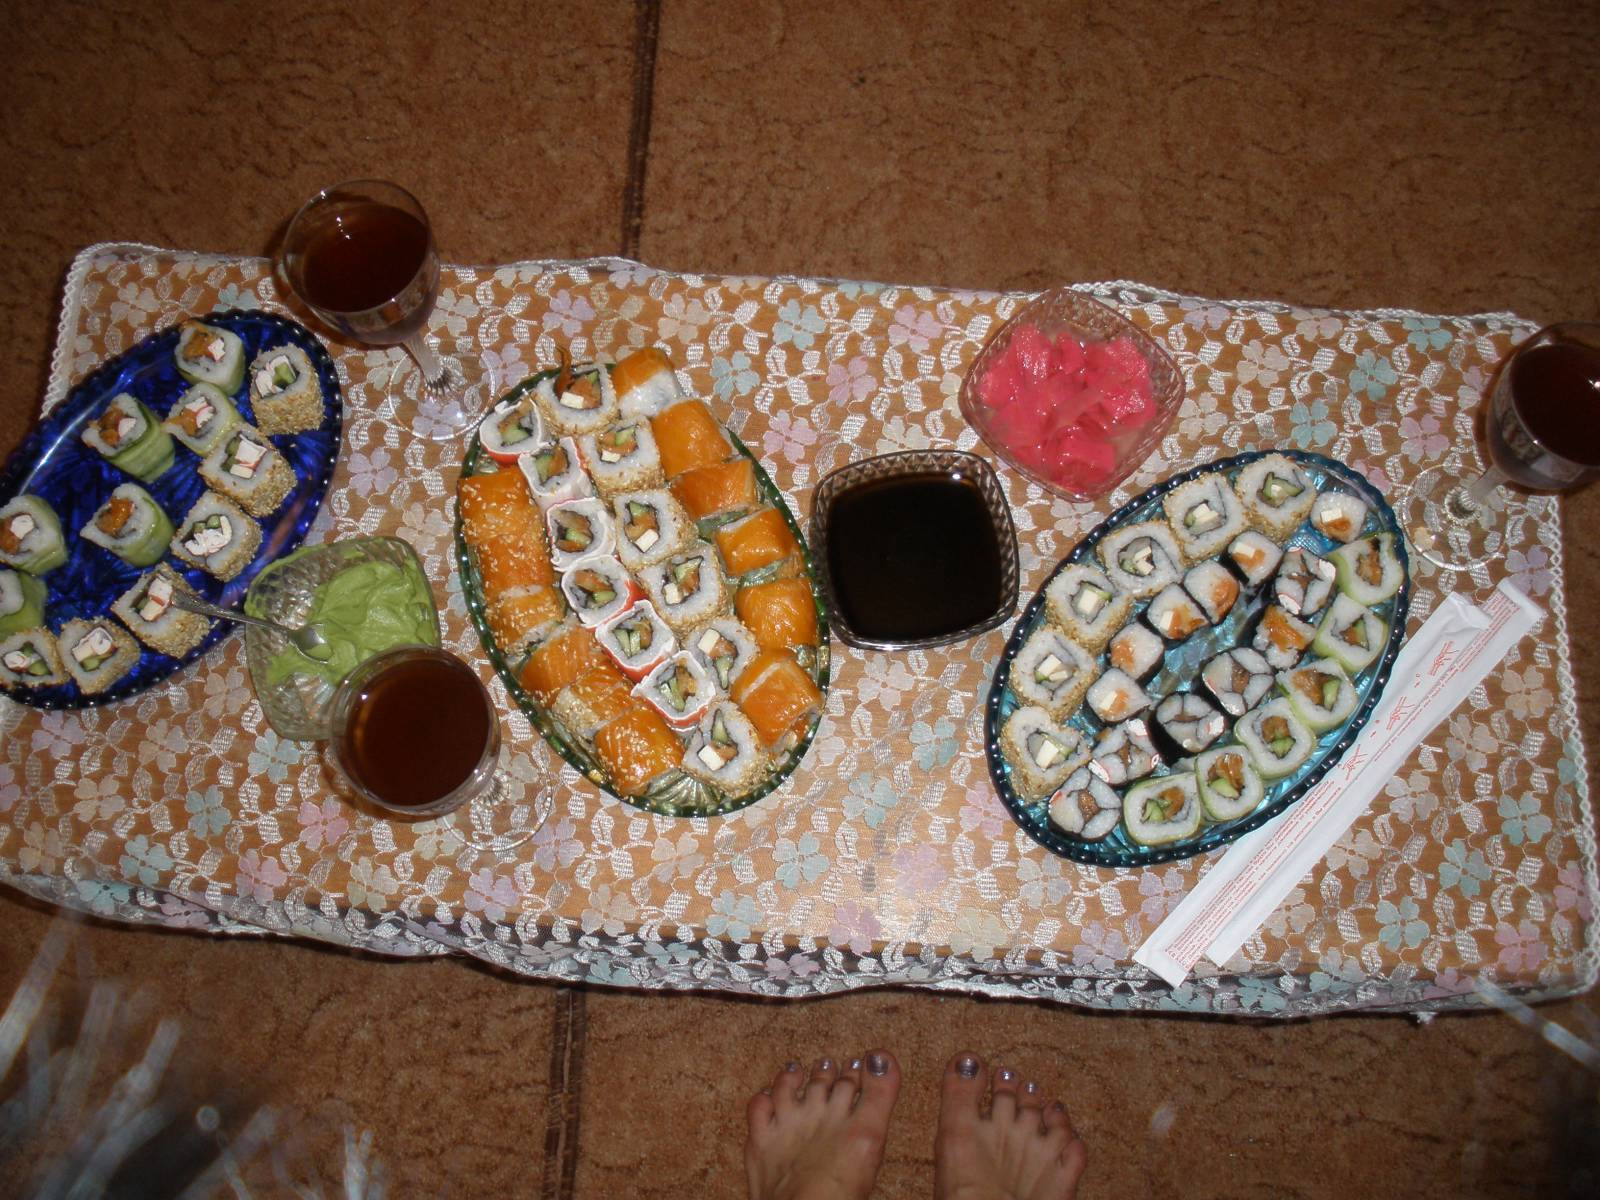 Sushi casero